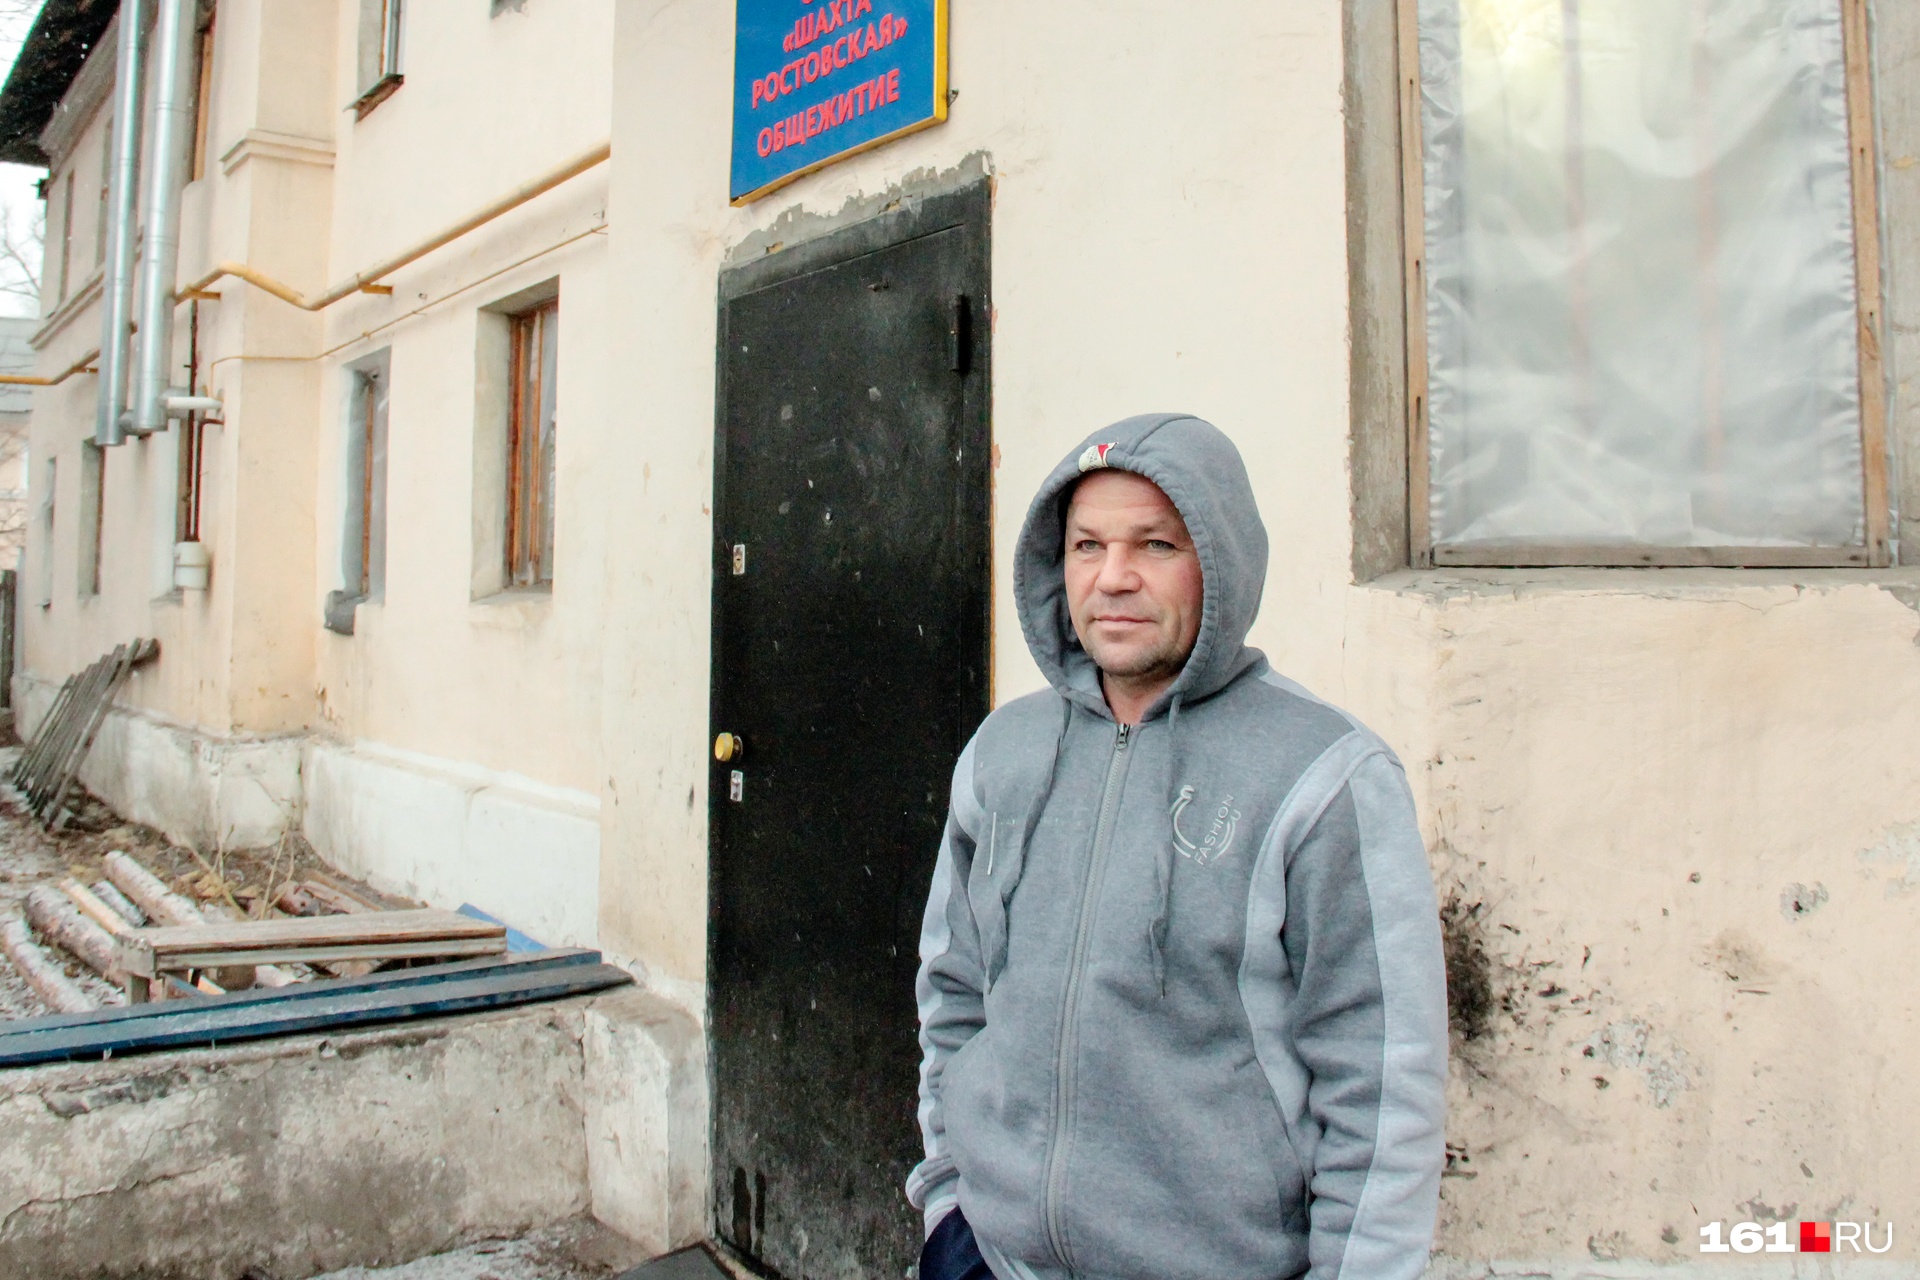 Шахтер из Луганска считает, что на его родине работу не найти